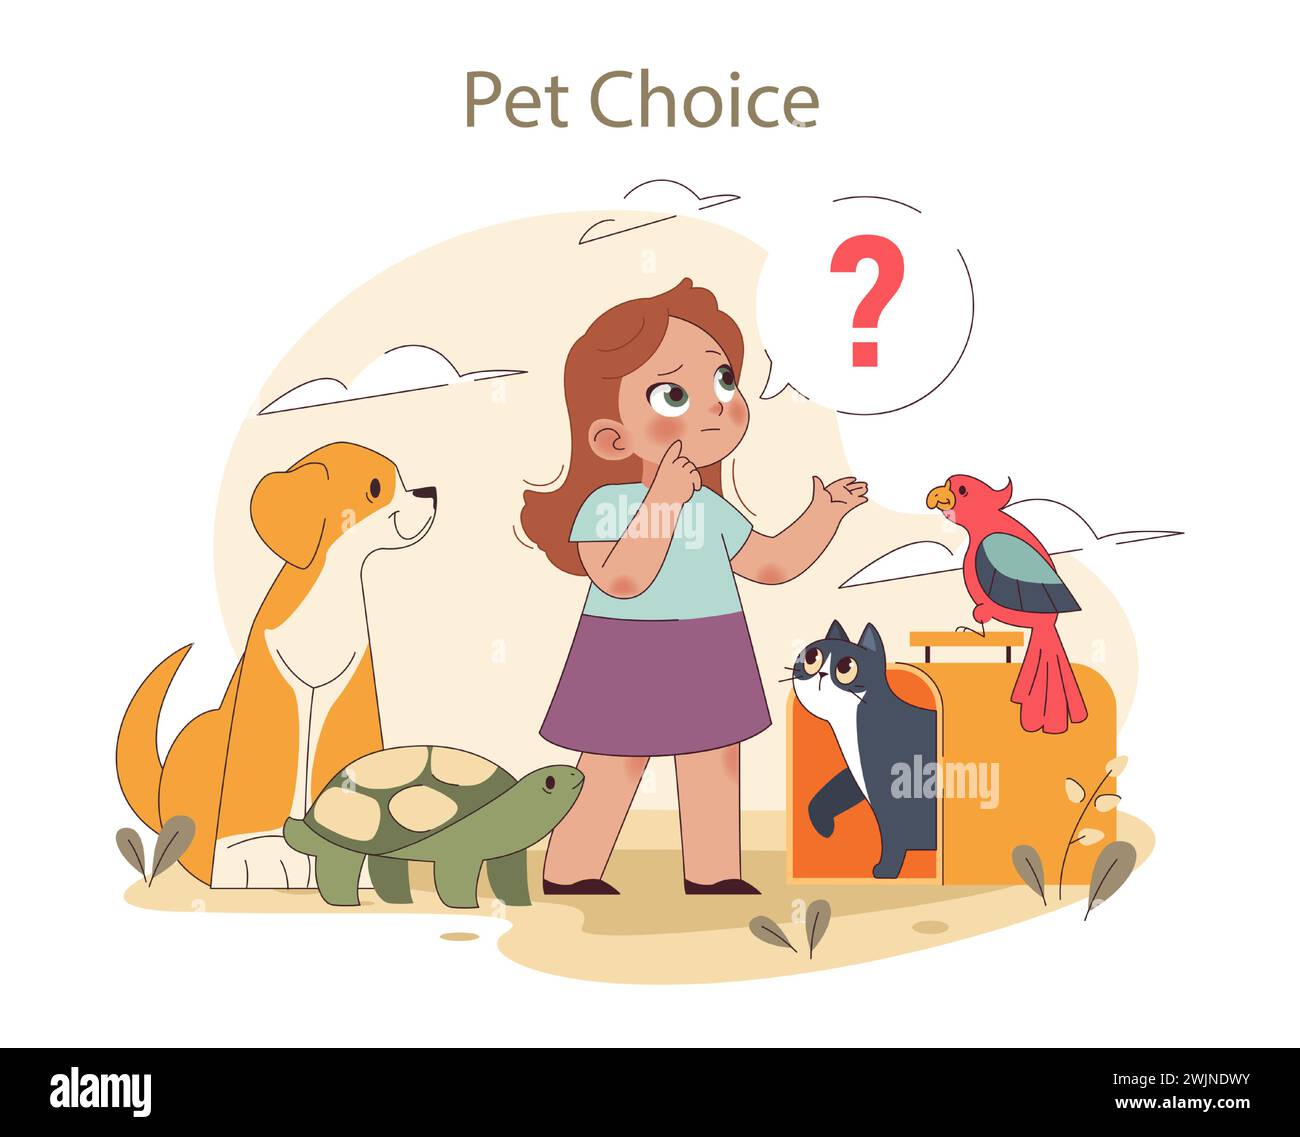 Concetto bambini e animali domestici. Una giovane ragazza considera vari animali, riflettendo sulla sua scelta di un animale domestico. Prendere decisioni nella vita di un bambino. Illustrazione vettoriale piatta Illustrazione Vettoriale